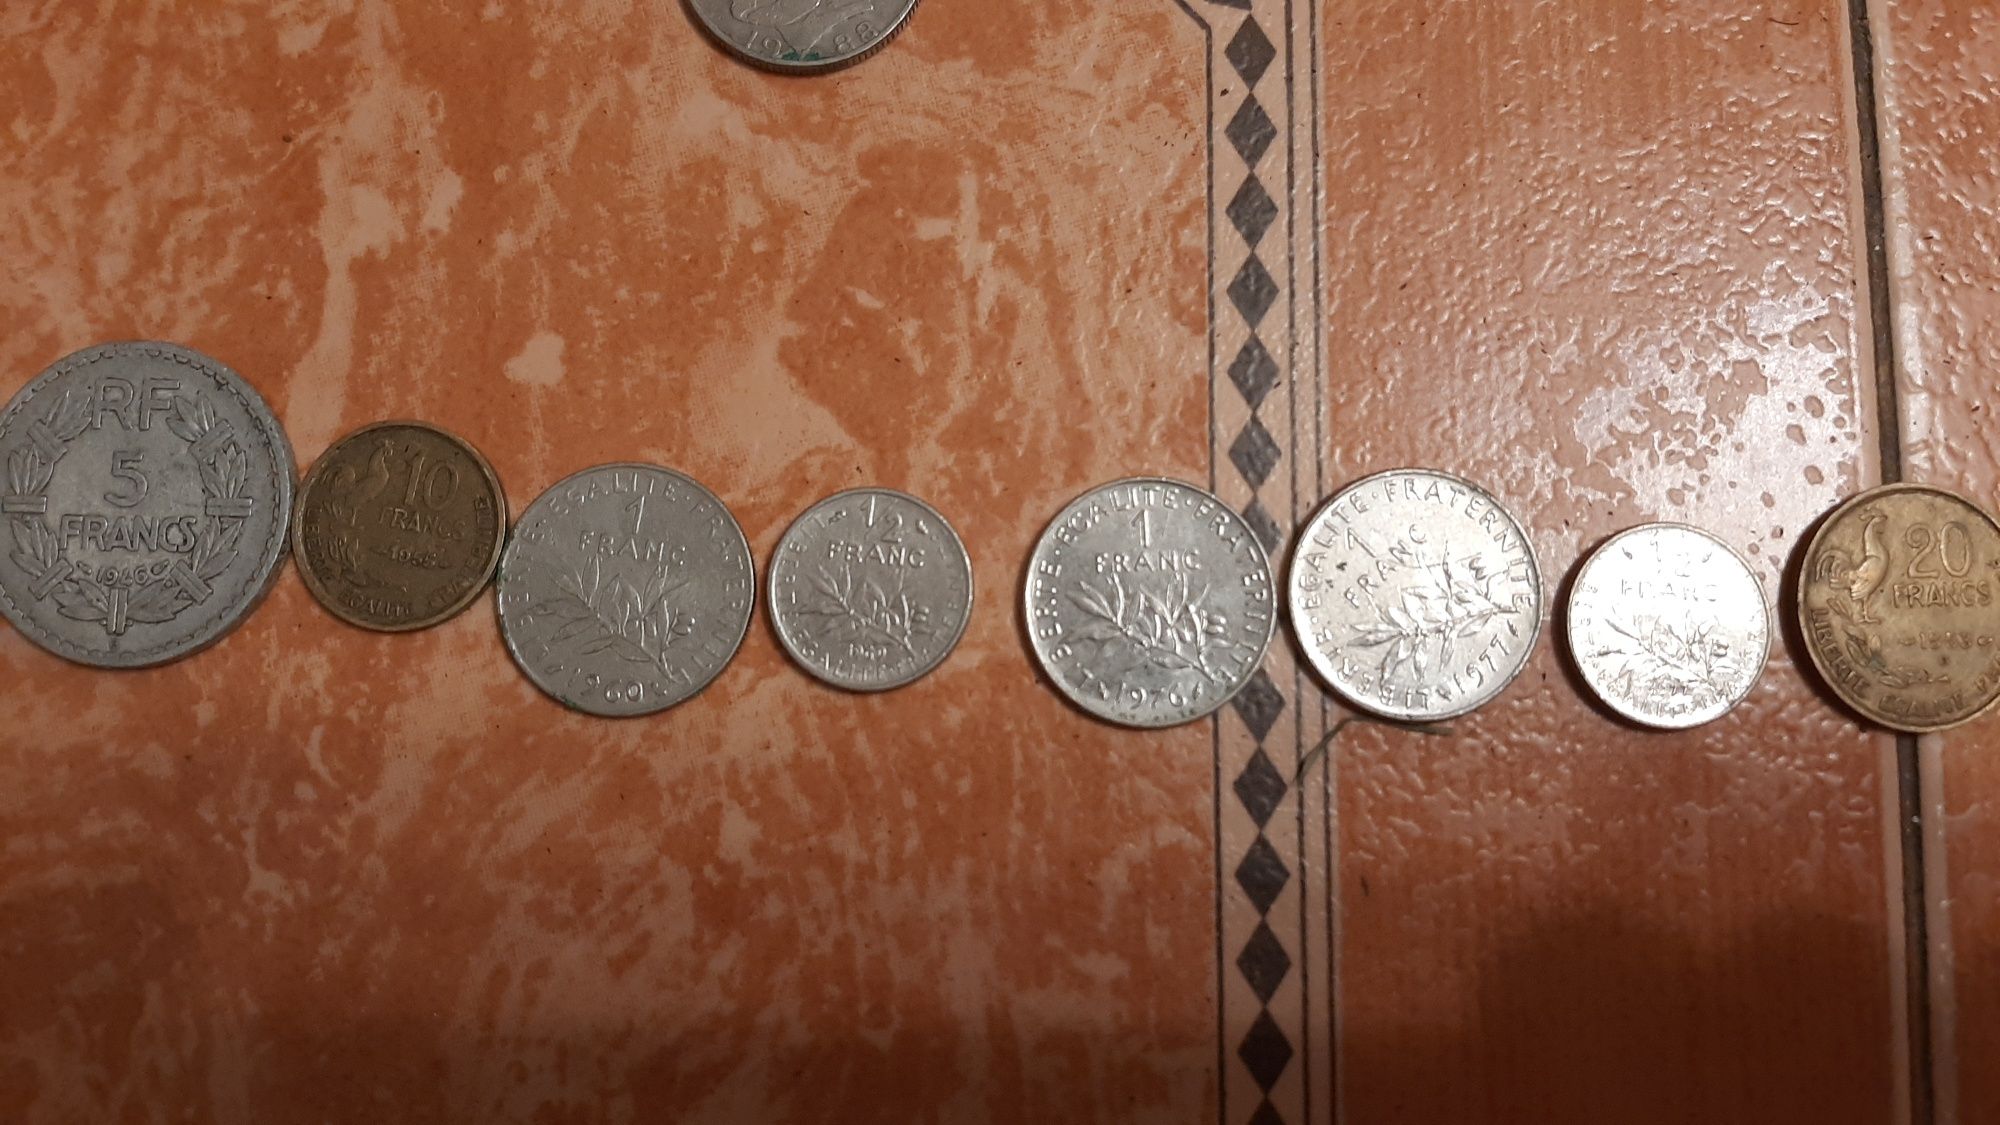 Monede 1940 ..pana azi Usa , india, Franta ,Rusia,olanda,Norvegia